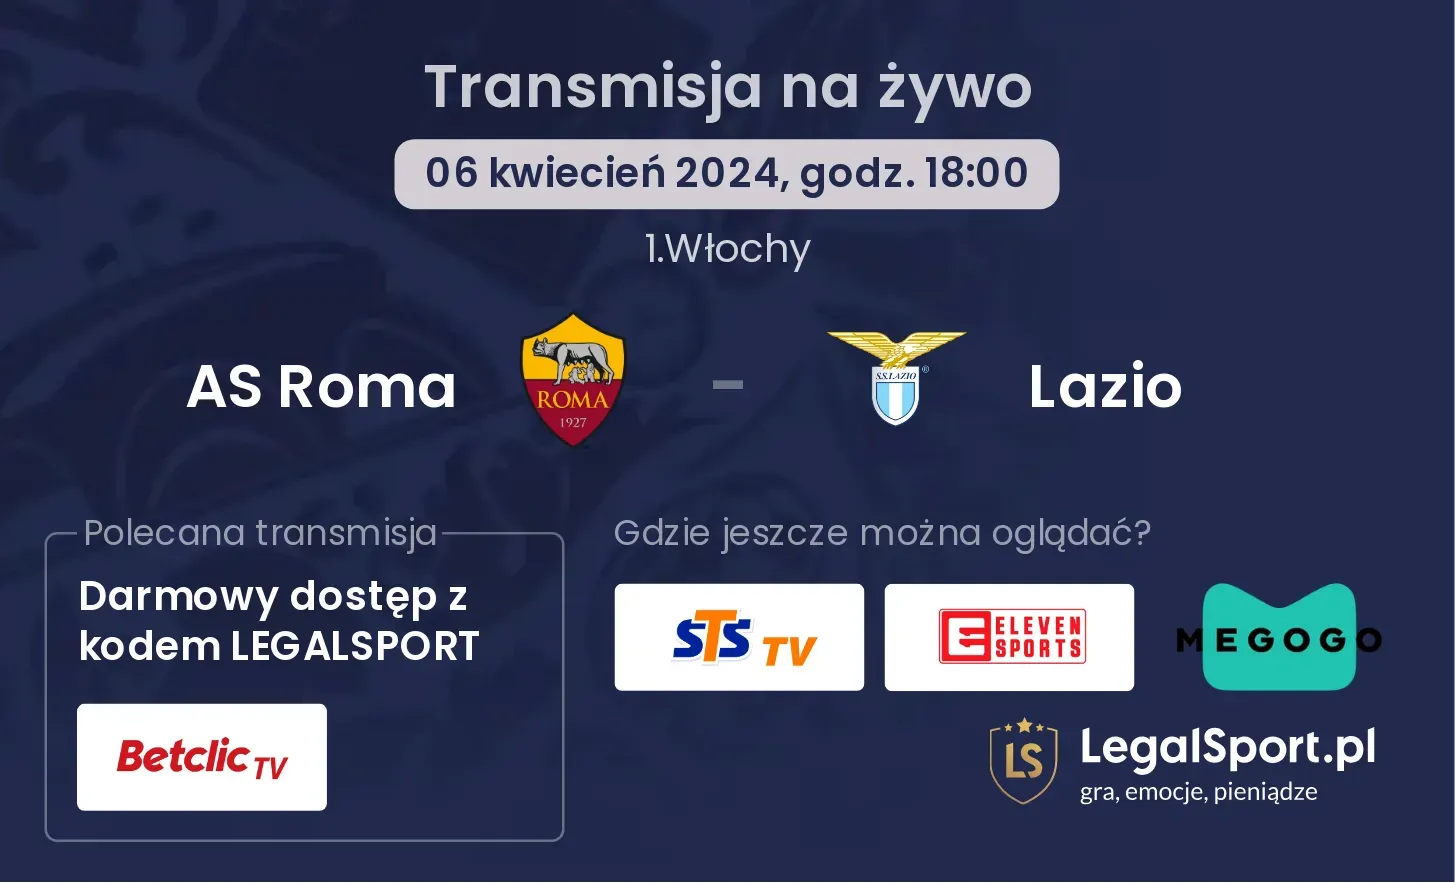 AS Roma - Lazio transmisja na żywo